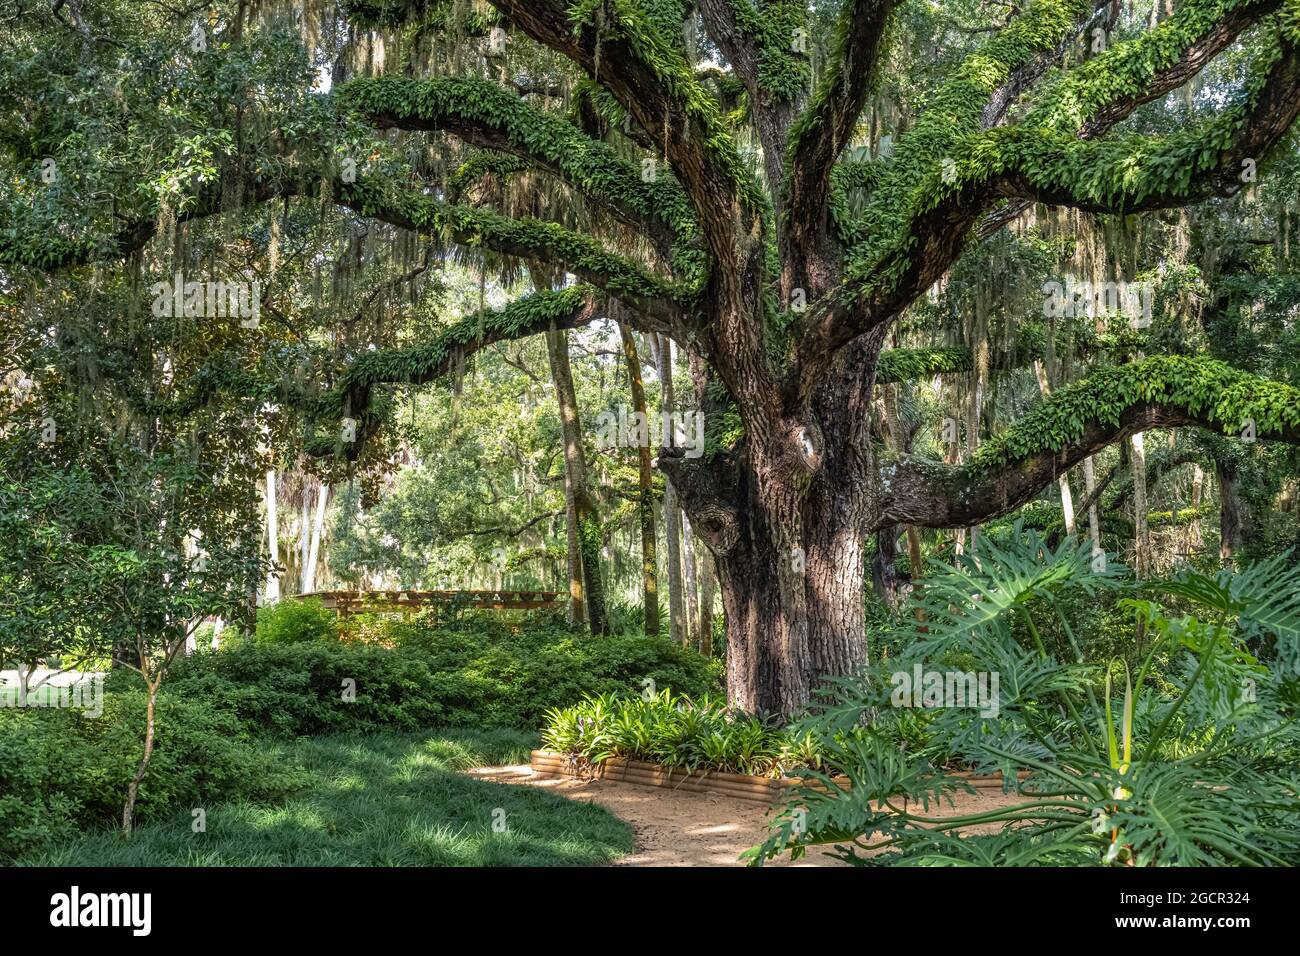 Jardin de hamac en chêne au parc national de Washington Oaks Gardens à Palm Coast, Floride. (ÉTATS-UNIS) Banque D'Images